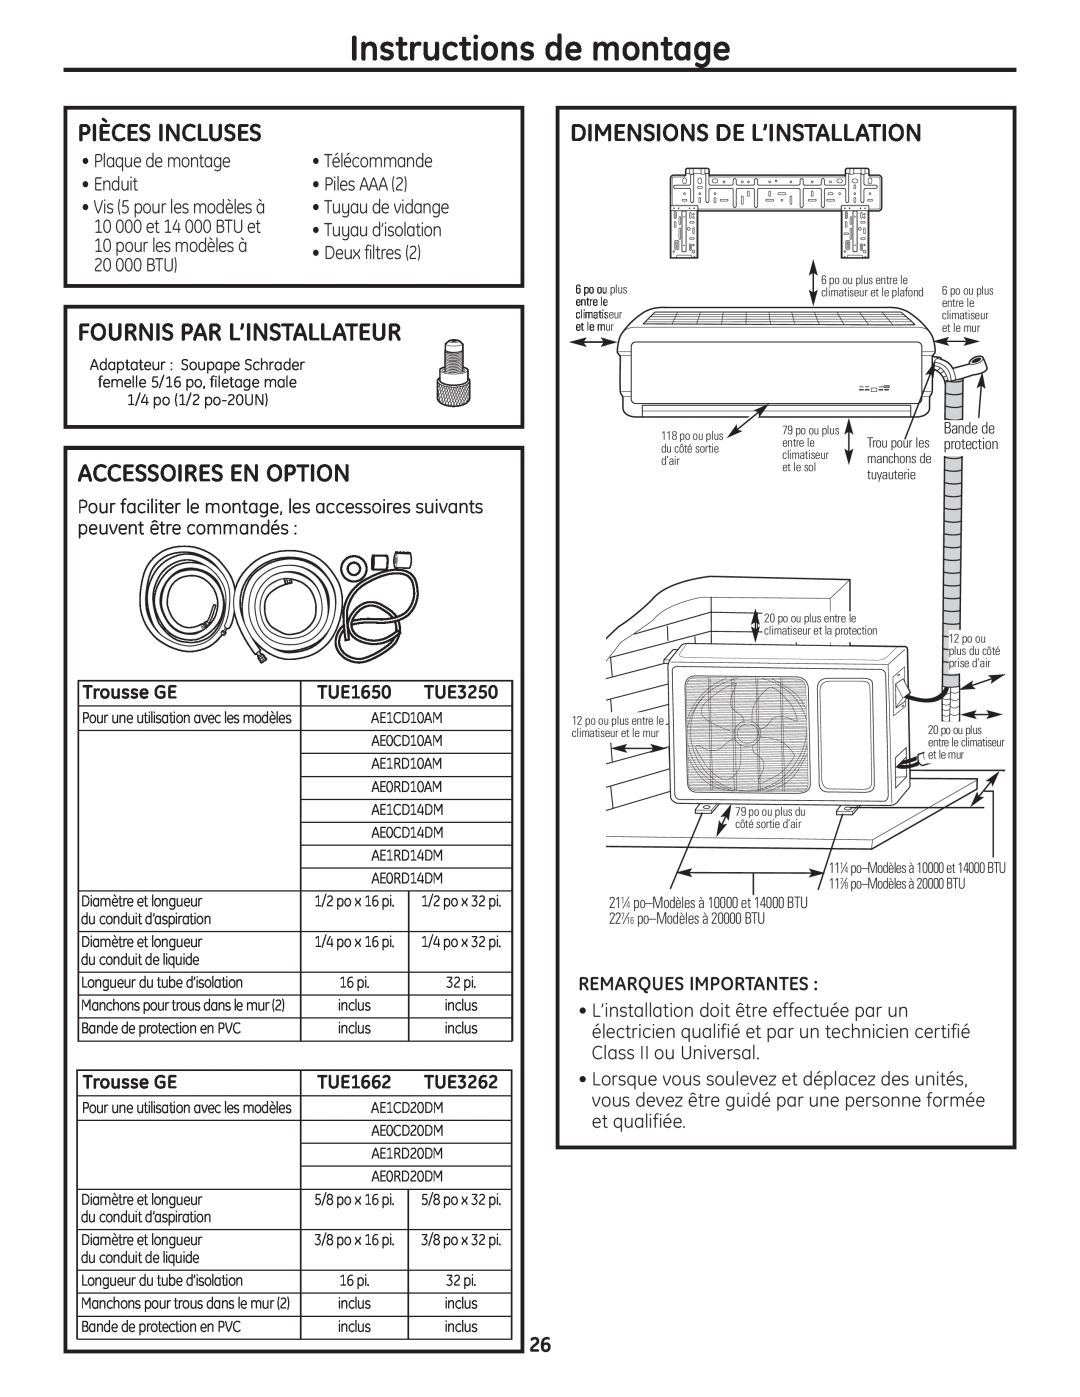 GE AE1CD20DM Instructions de montage, Pièces Incluses, Dimensions De L’Installation, Fournis Par L’Installateur, TUE1650 